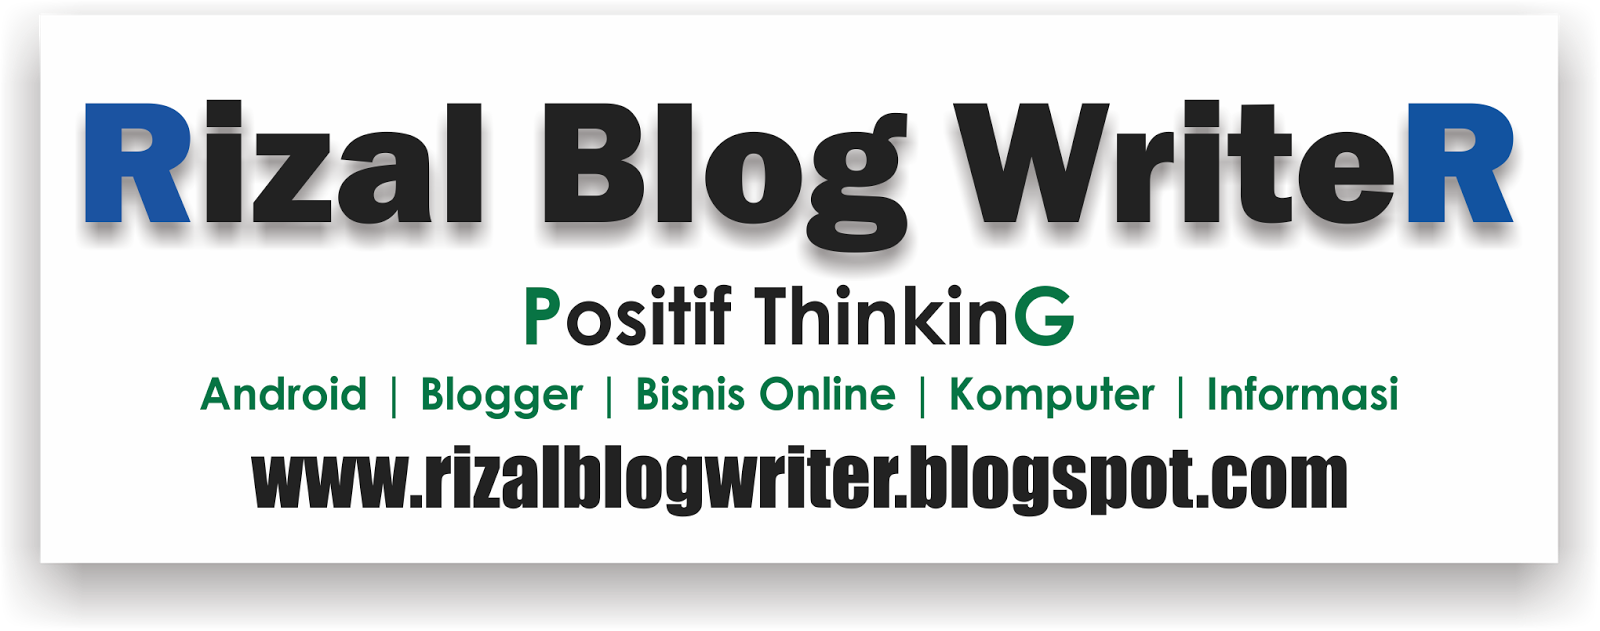 Rizal Blog Writer